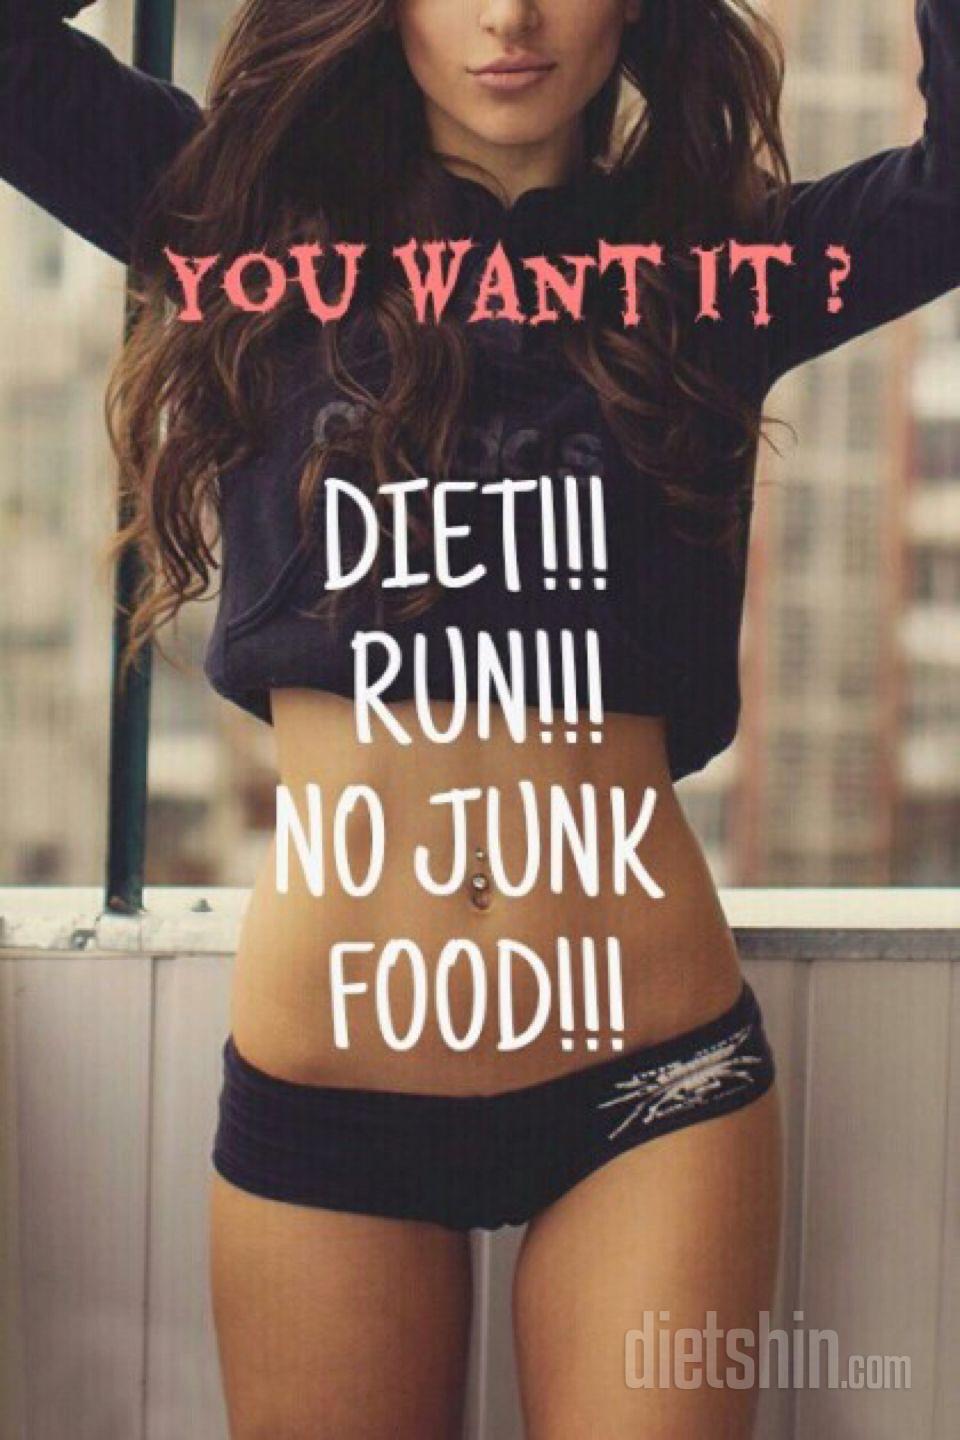 별거 아닌 다이어트